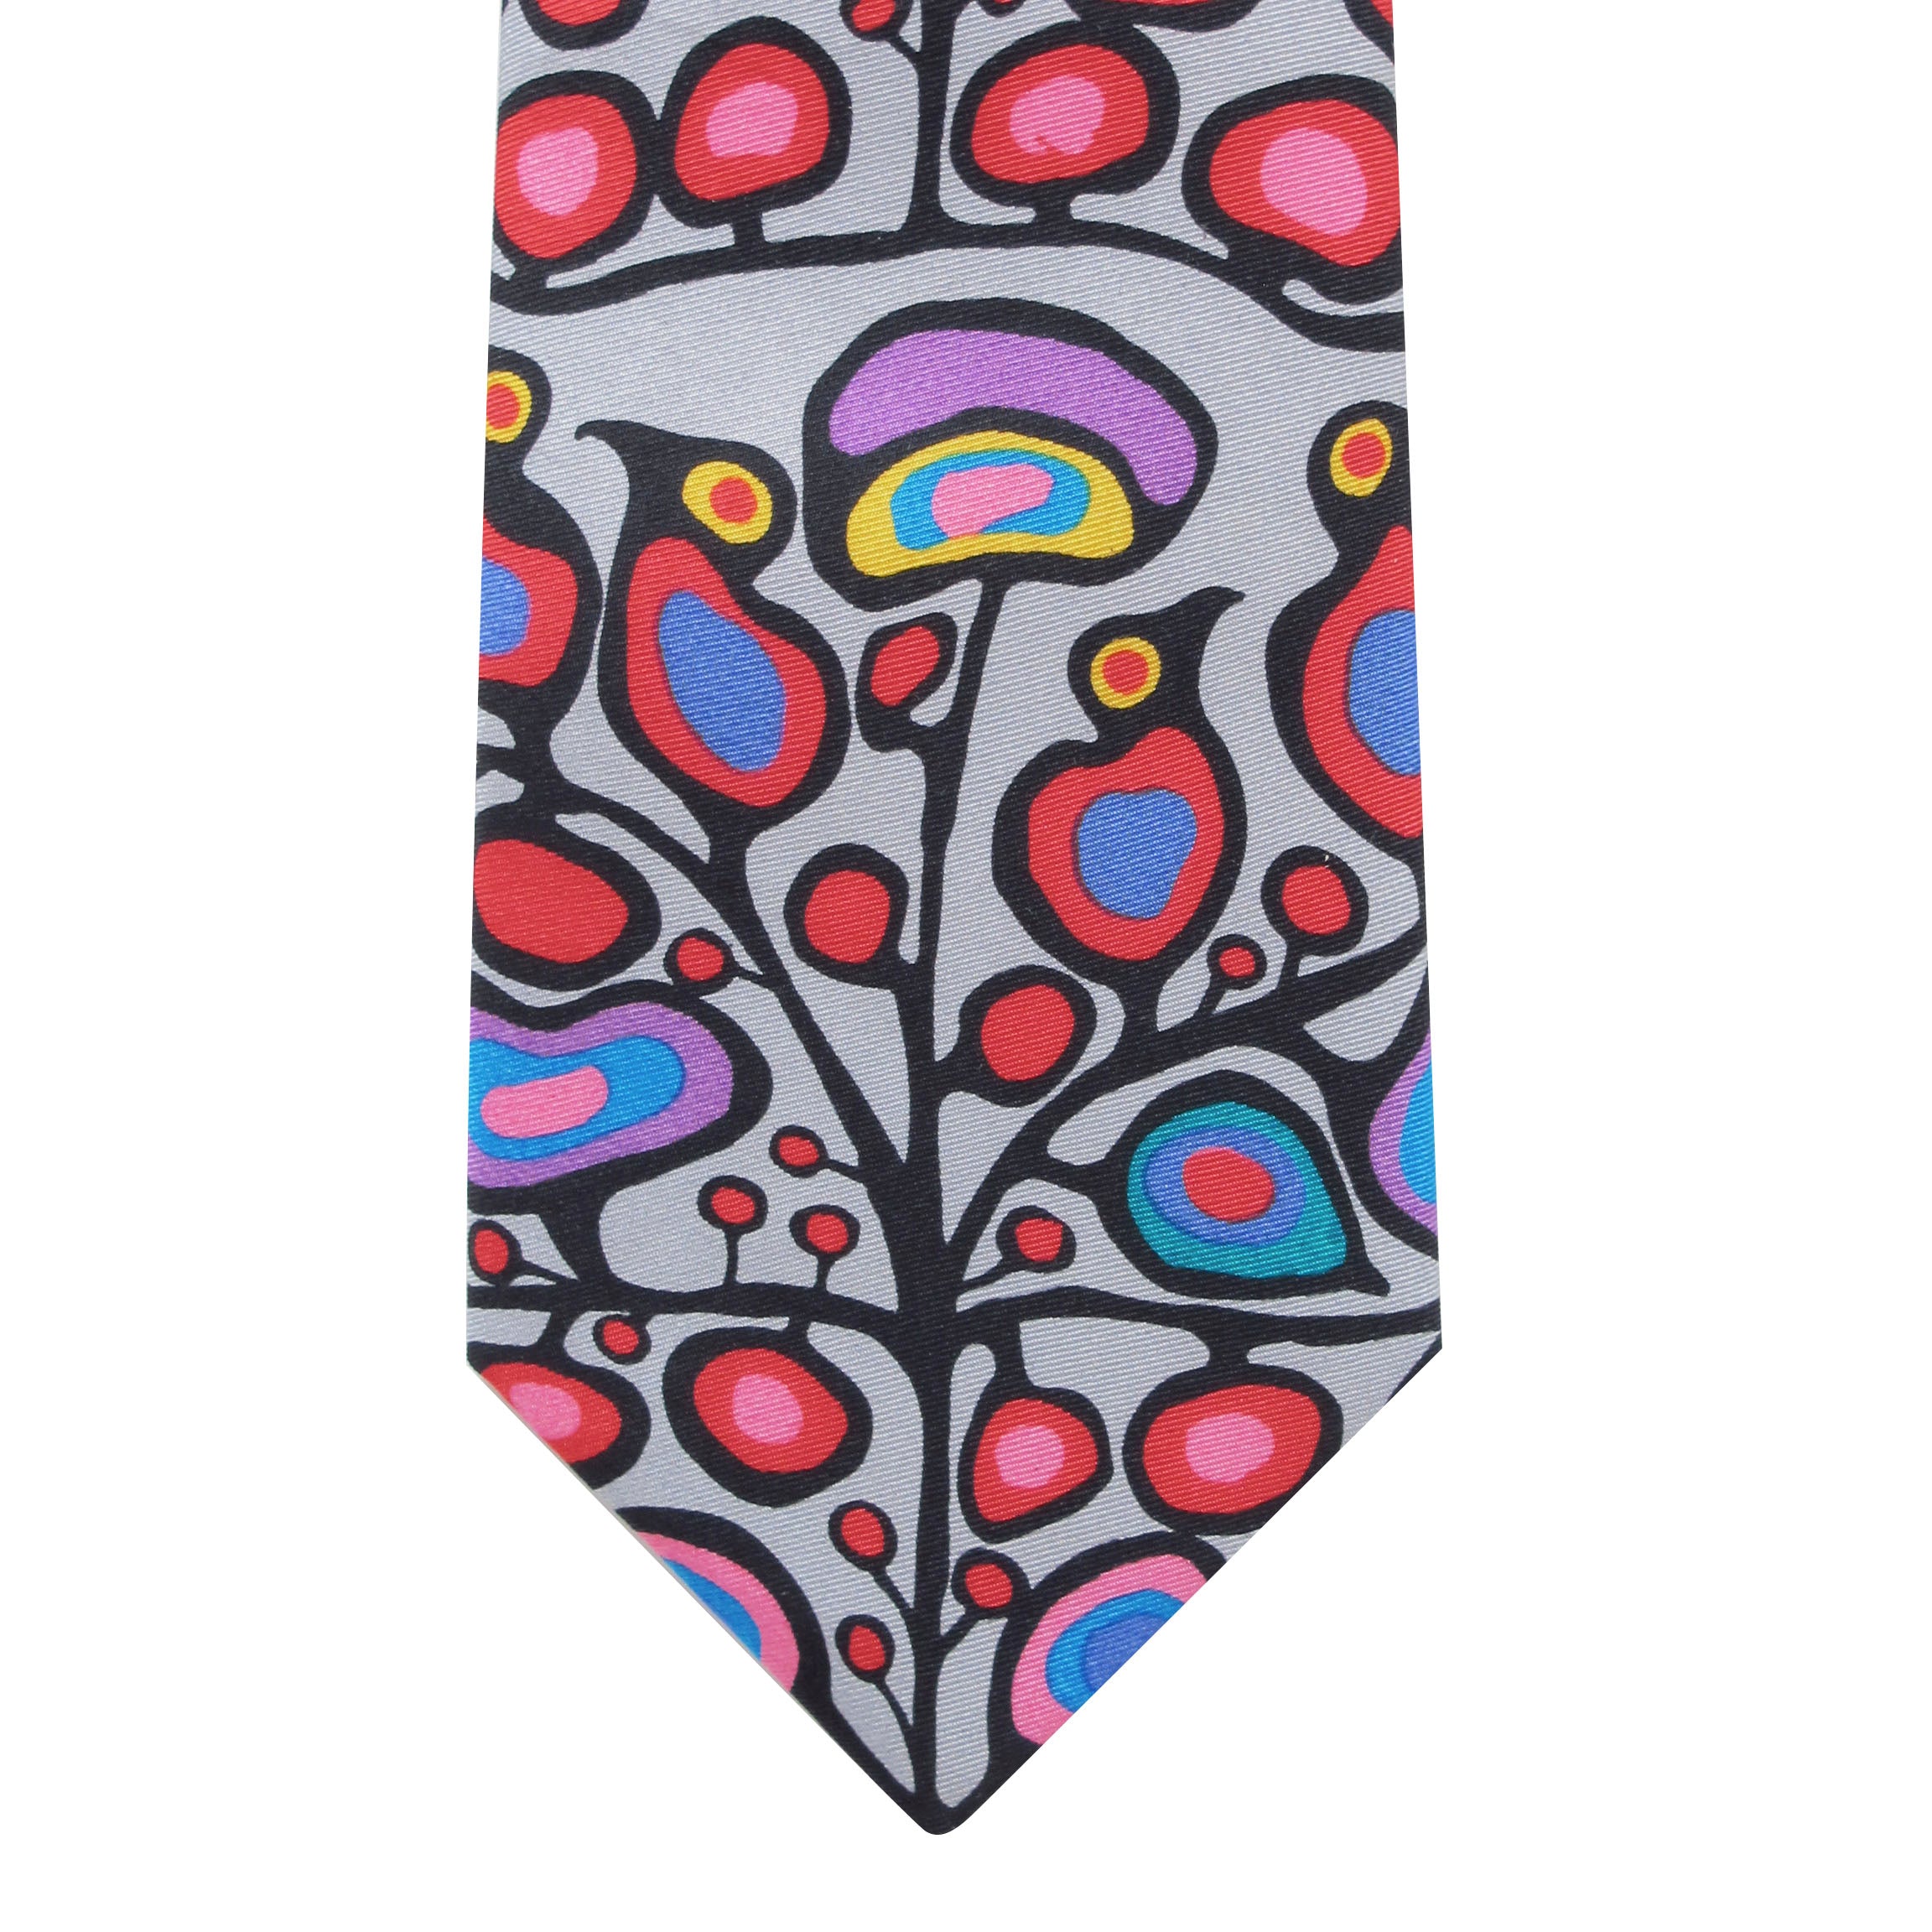 Norval Morrisseau Woodland Floral Artist Design Silk Tie